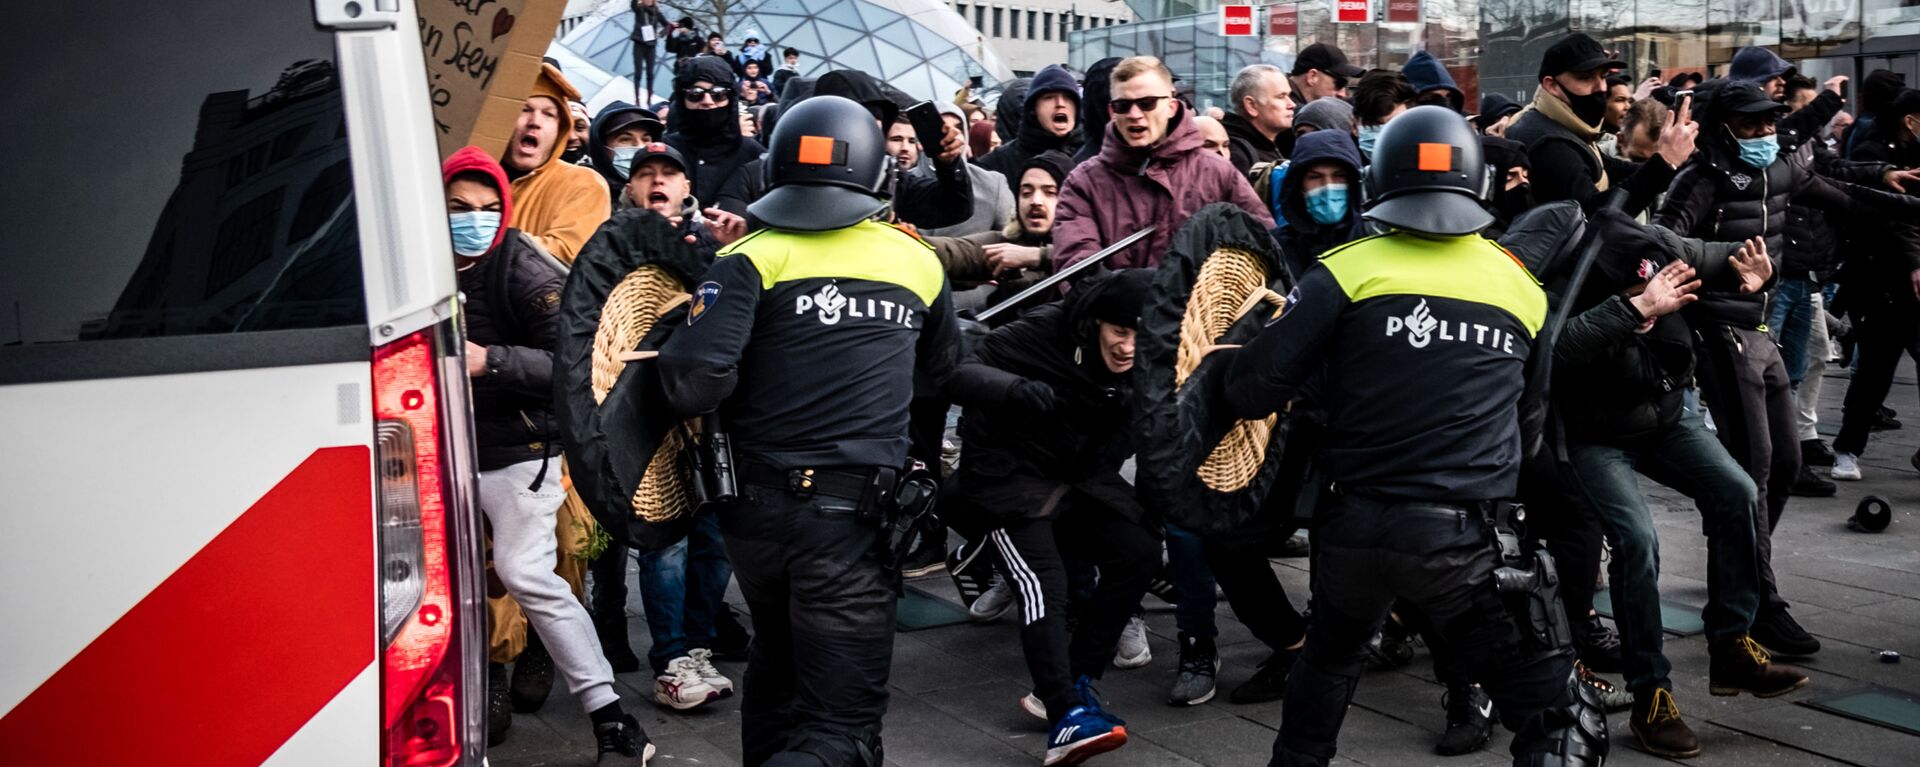 احتجاجات عارمة في أيندهوفن ضد سياسة كورونا، هولندا في 24 يناير 2021  - سبوتنيك عربي, 1920, 11.11.2021